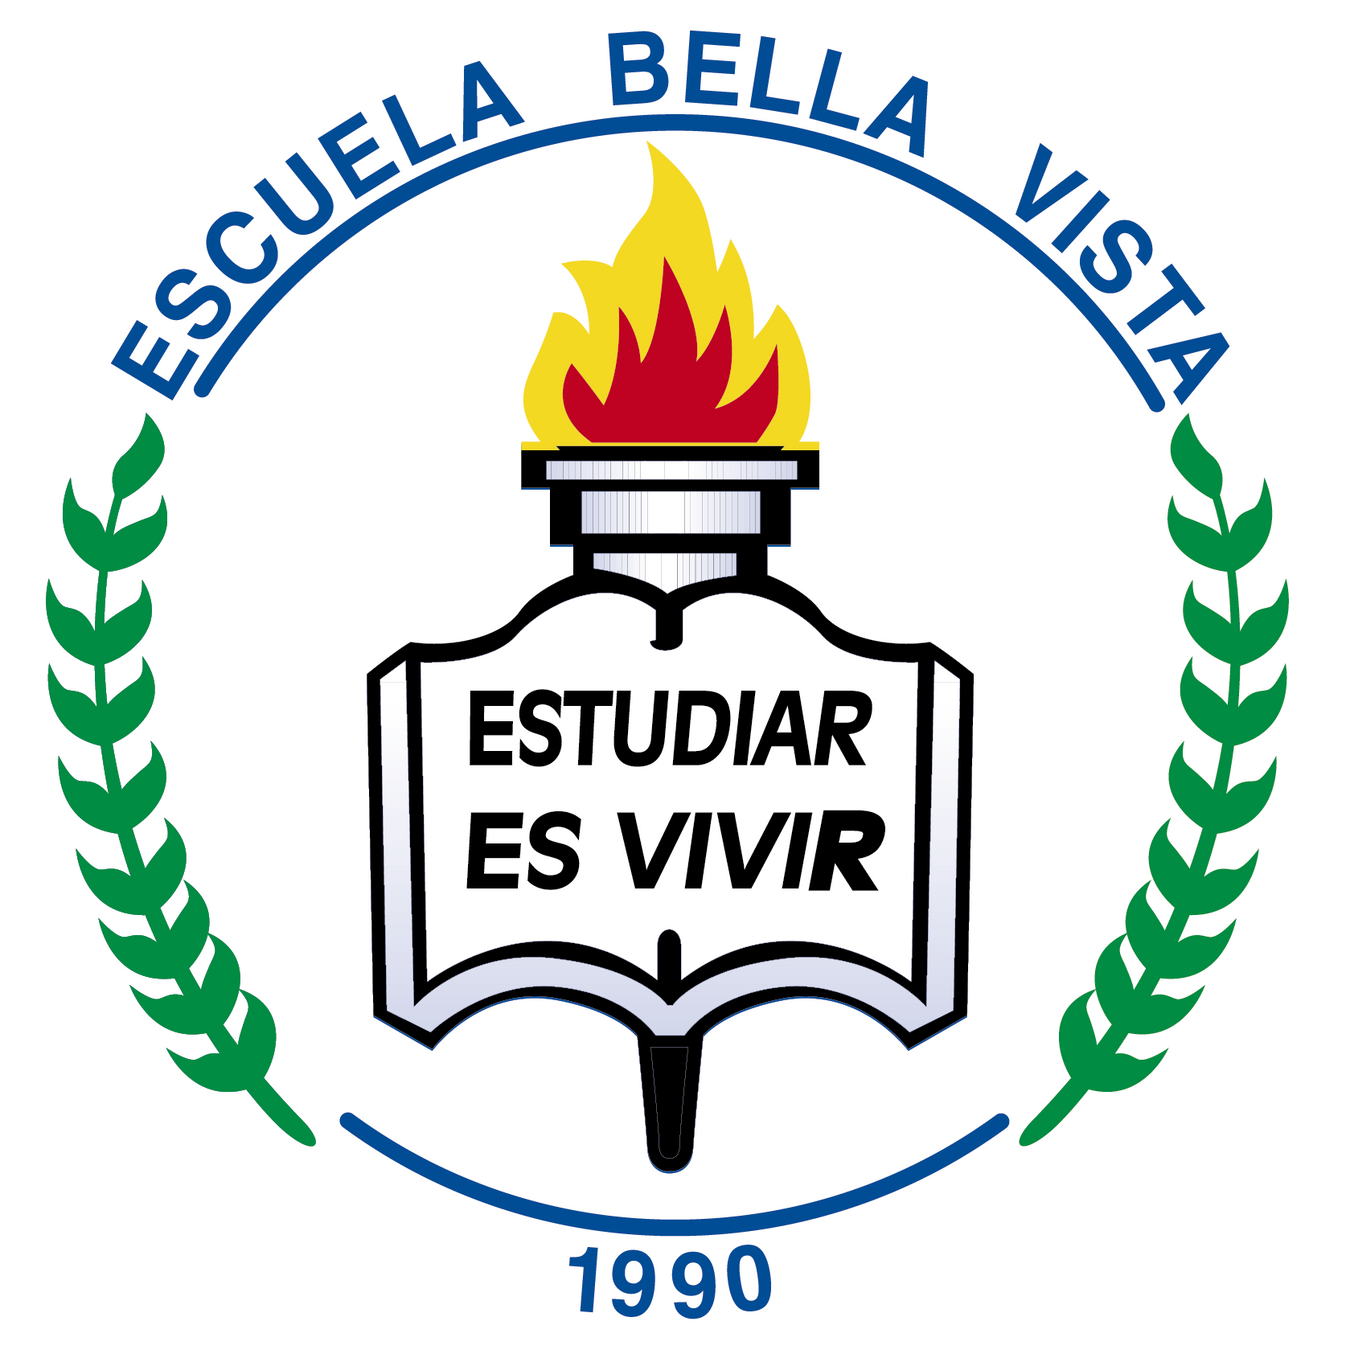 Escuela Bella Vista